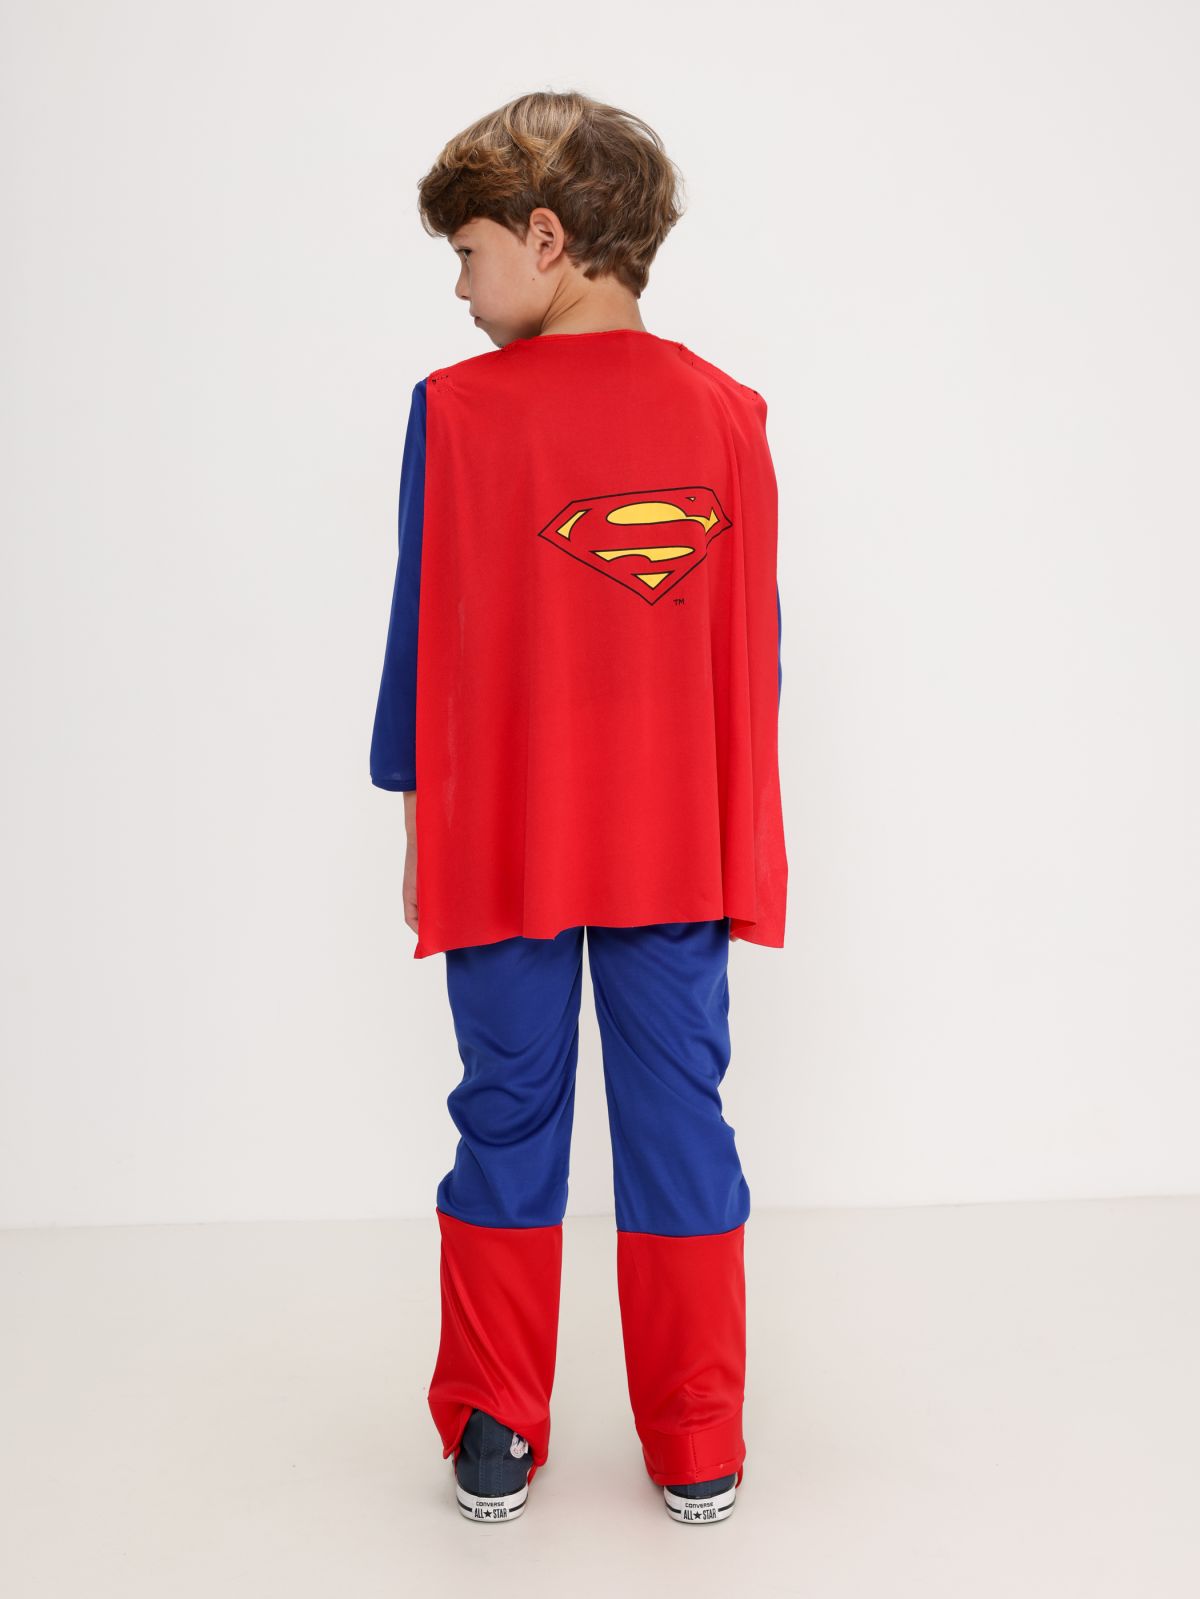  אוברול סופרמן שרירי עם גלימה / Purim Collection של SHOSHI ZOHAR